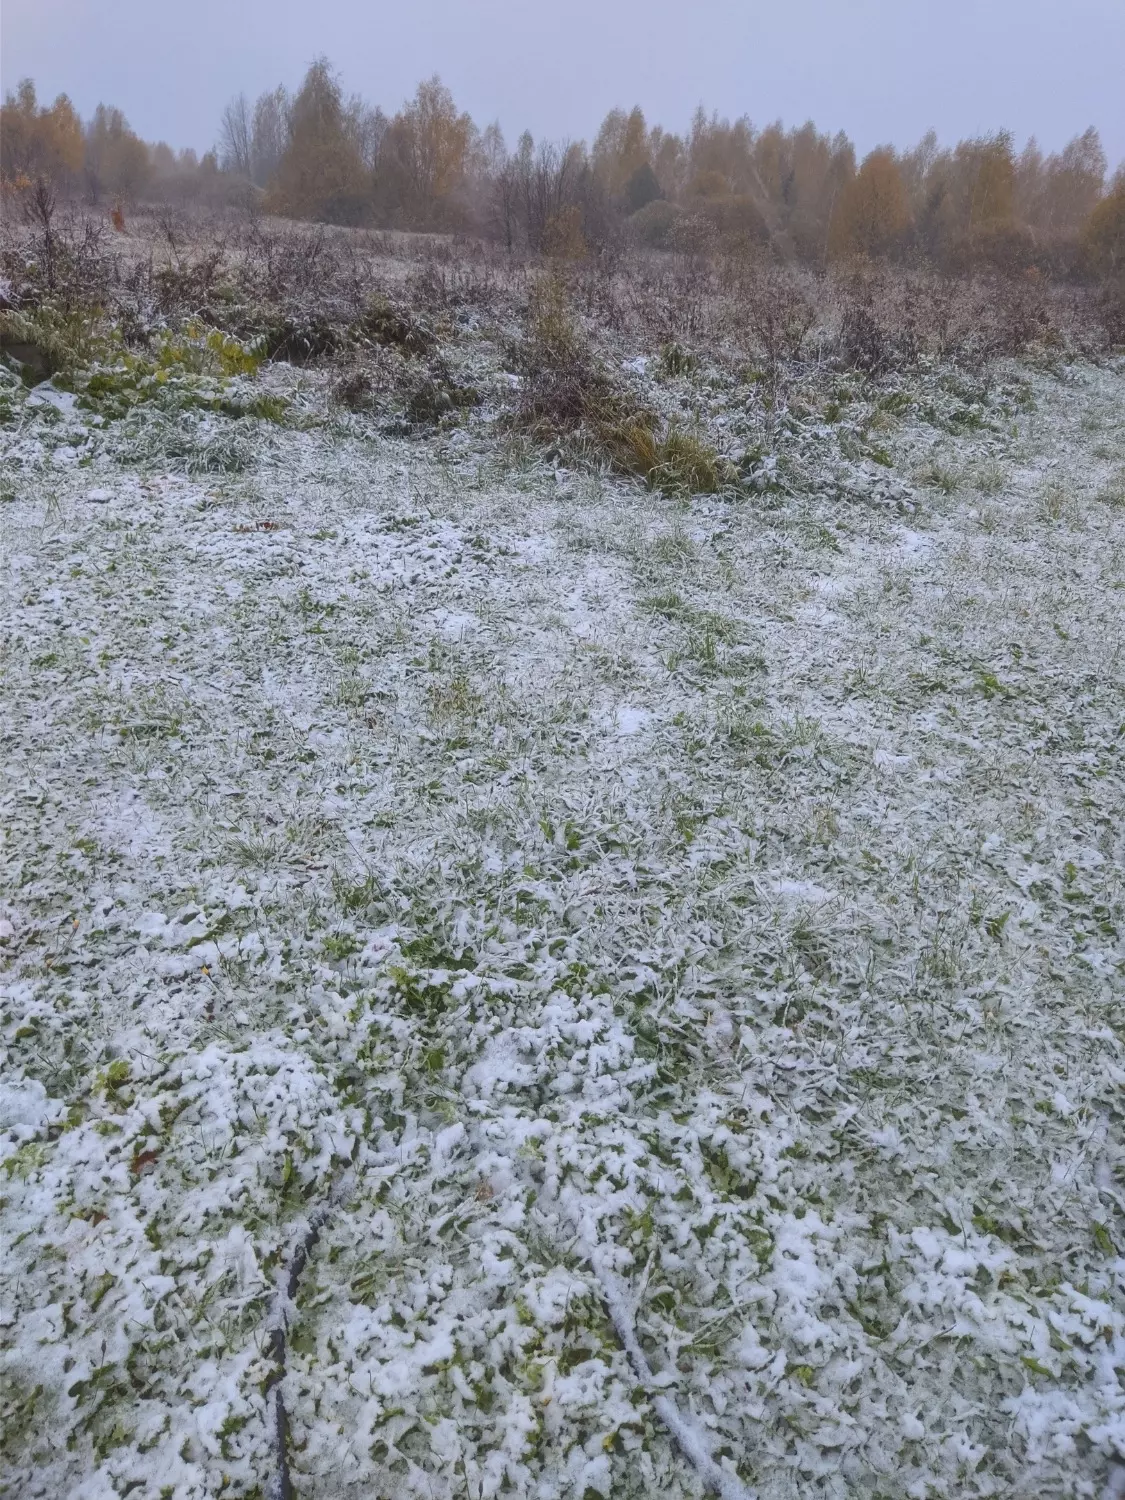 Первый снег выпал в Нижегородской области